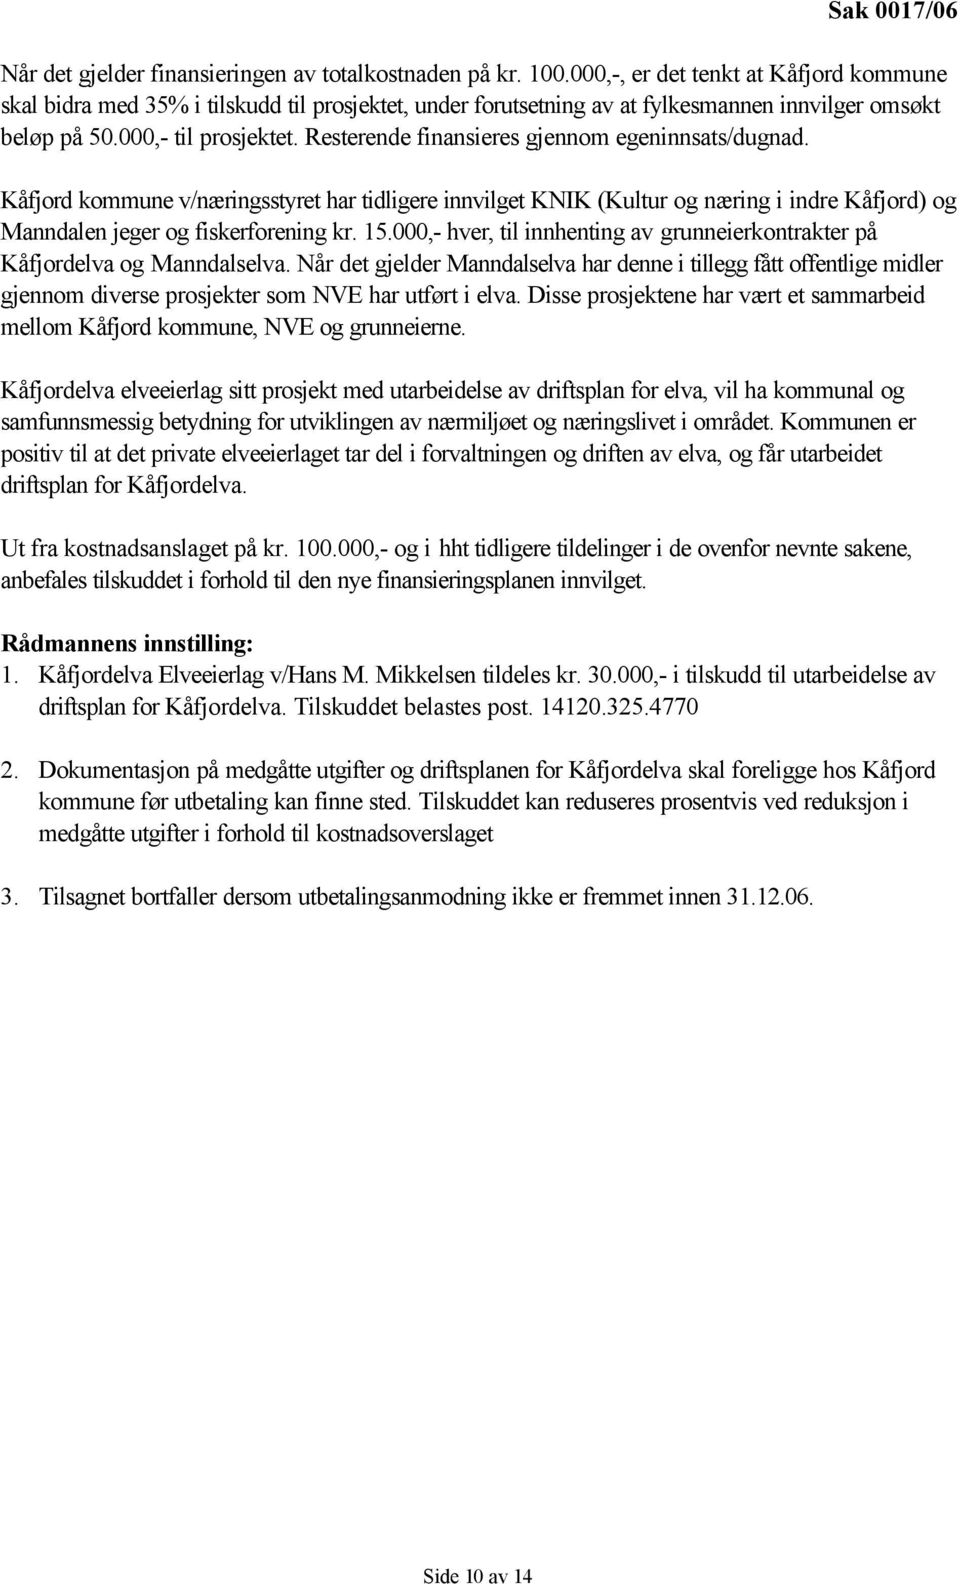 Resterende finansieres gjennom egeninnsats/dugnad. Kåfjord kommune v/næringsstyret har tidligere innvilget KNIK (Kultur og næring i indre Kåfjord) og Manndalen jeger og fiskerforening kr. 15.